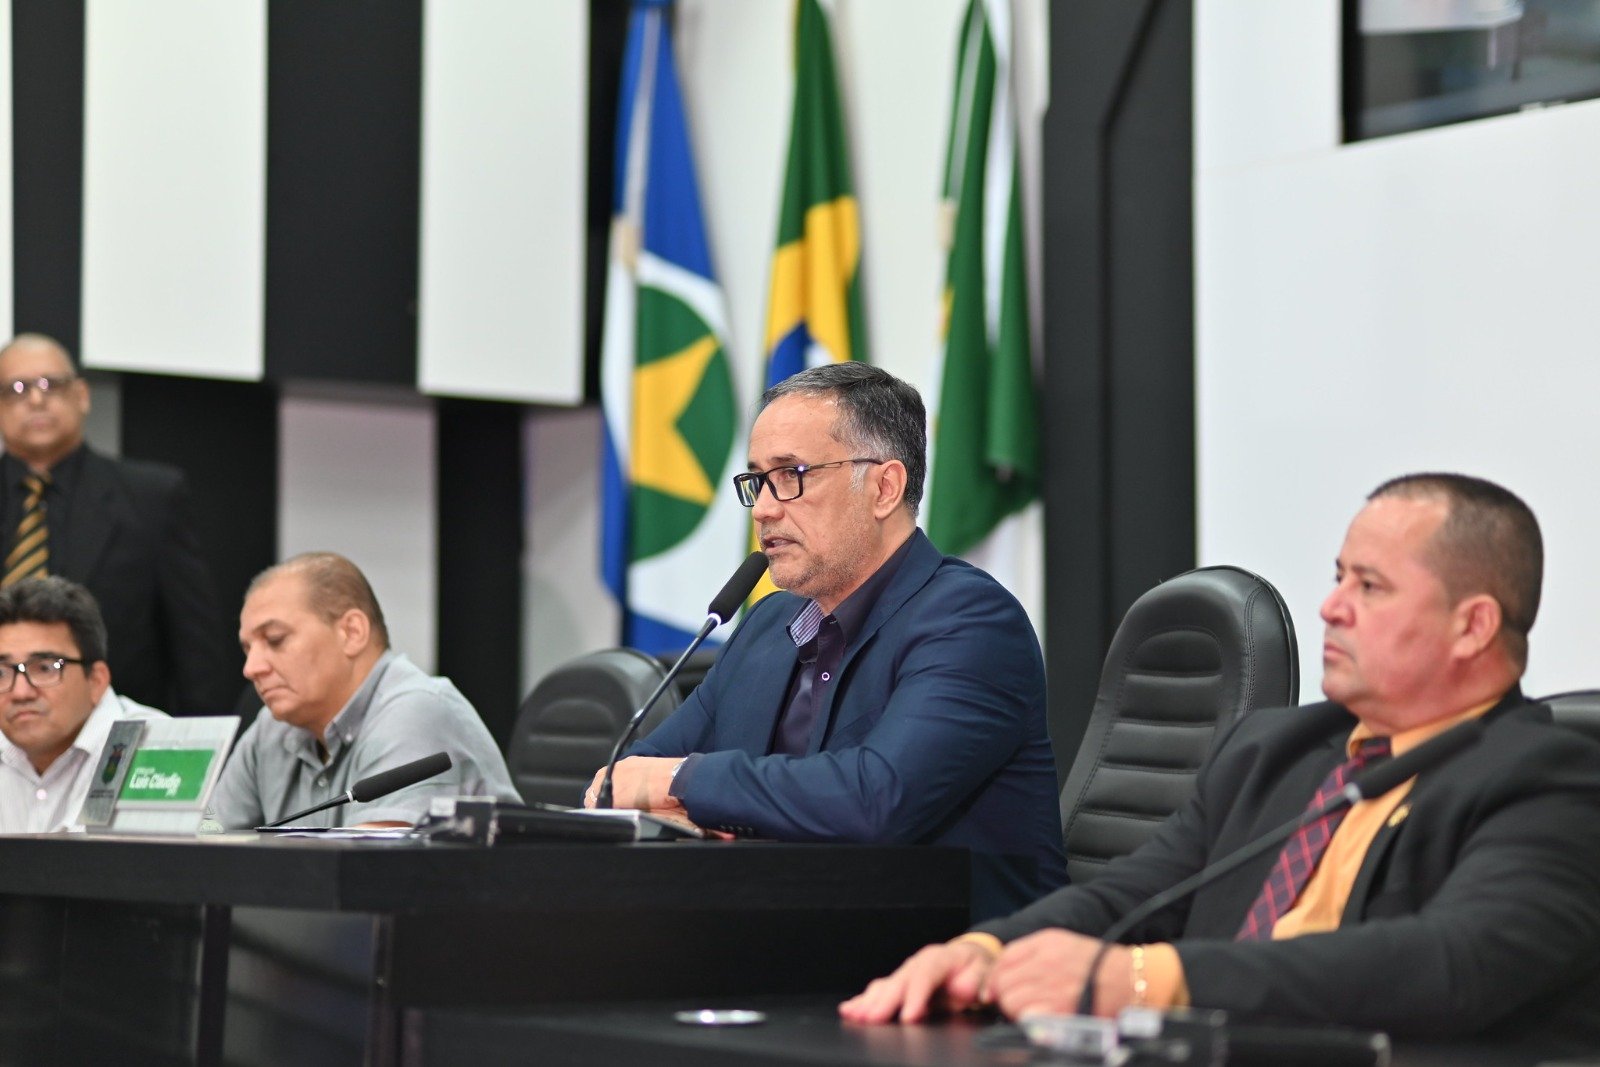 Vereador diz que Cuiabá precisa reconquistar título de “Cidade Verde” e criar políticas de combate aos efeitos do calor